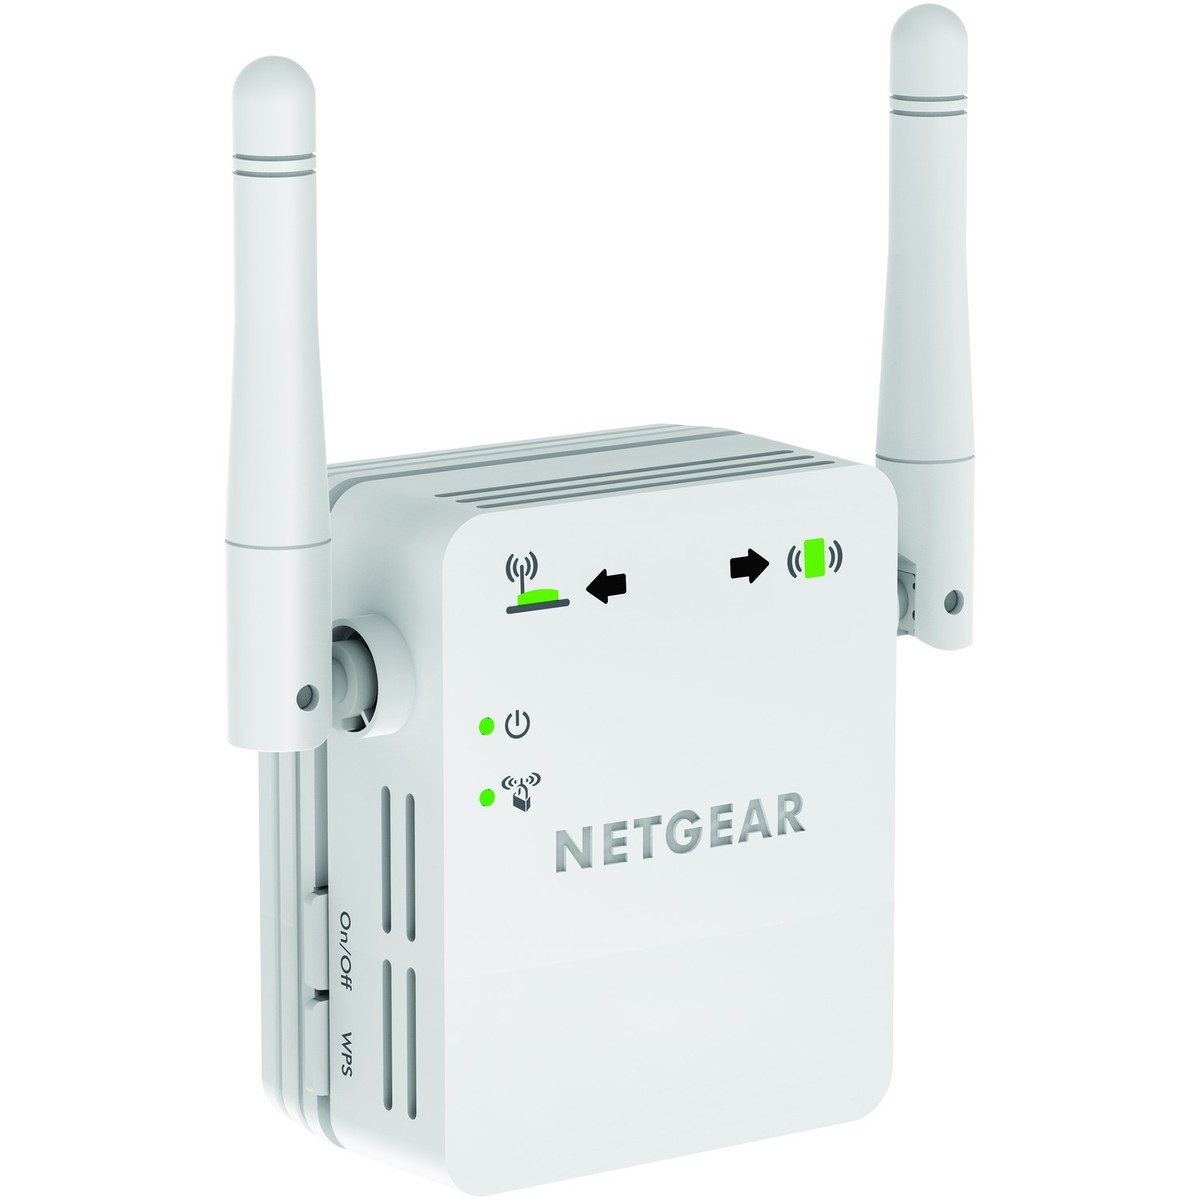 Netgear Wi-Fi Range Extender N300